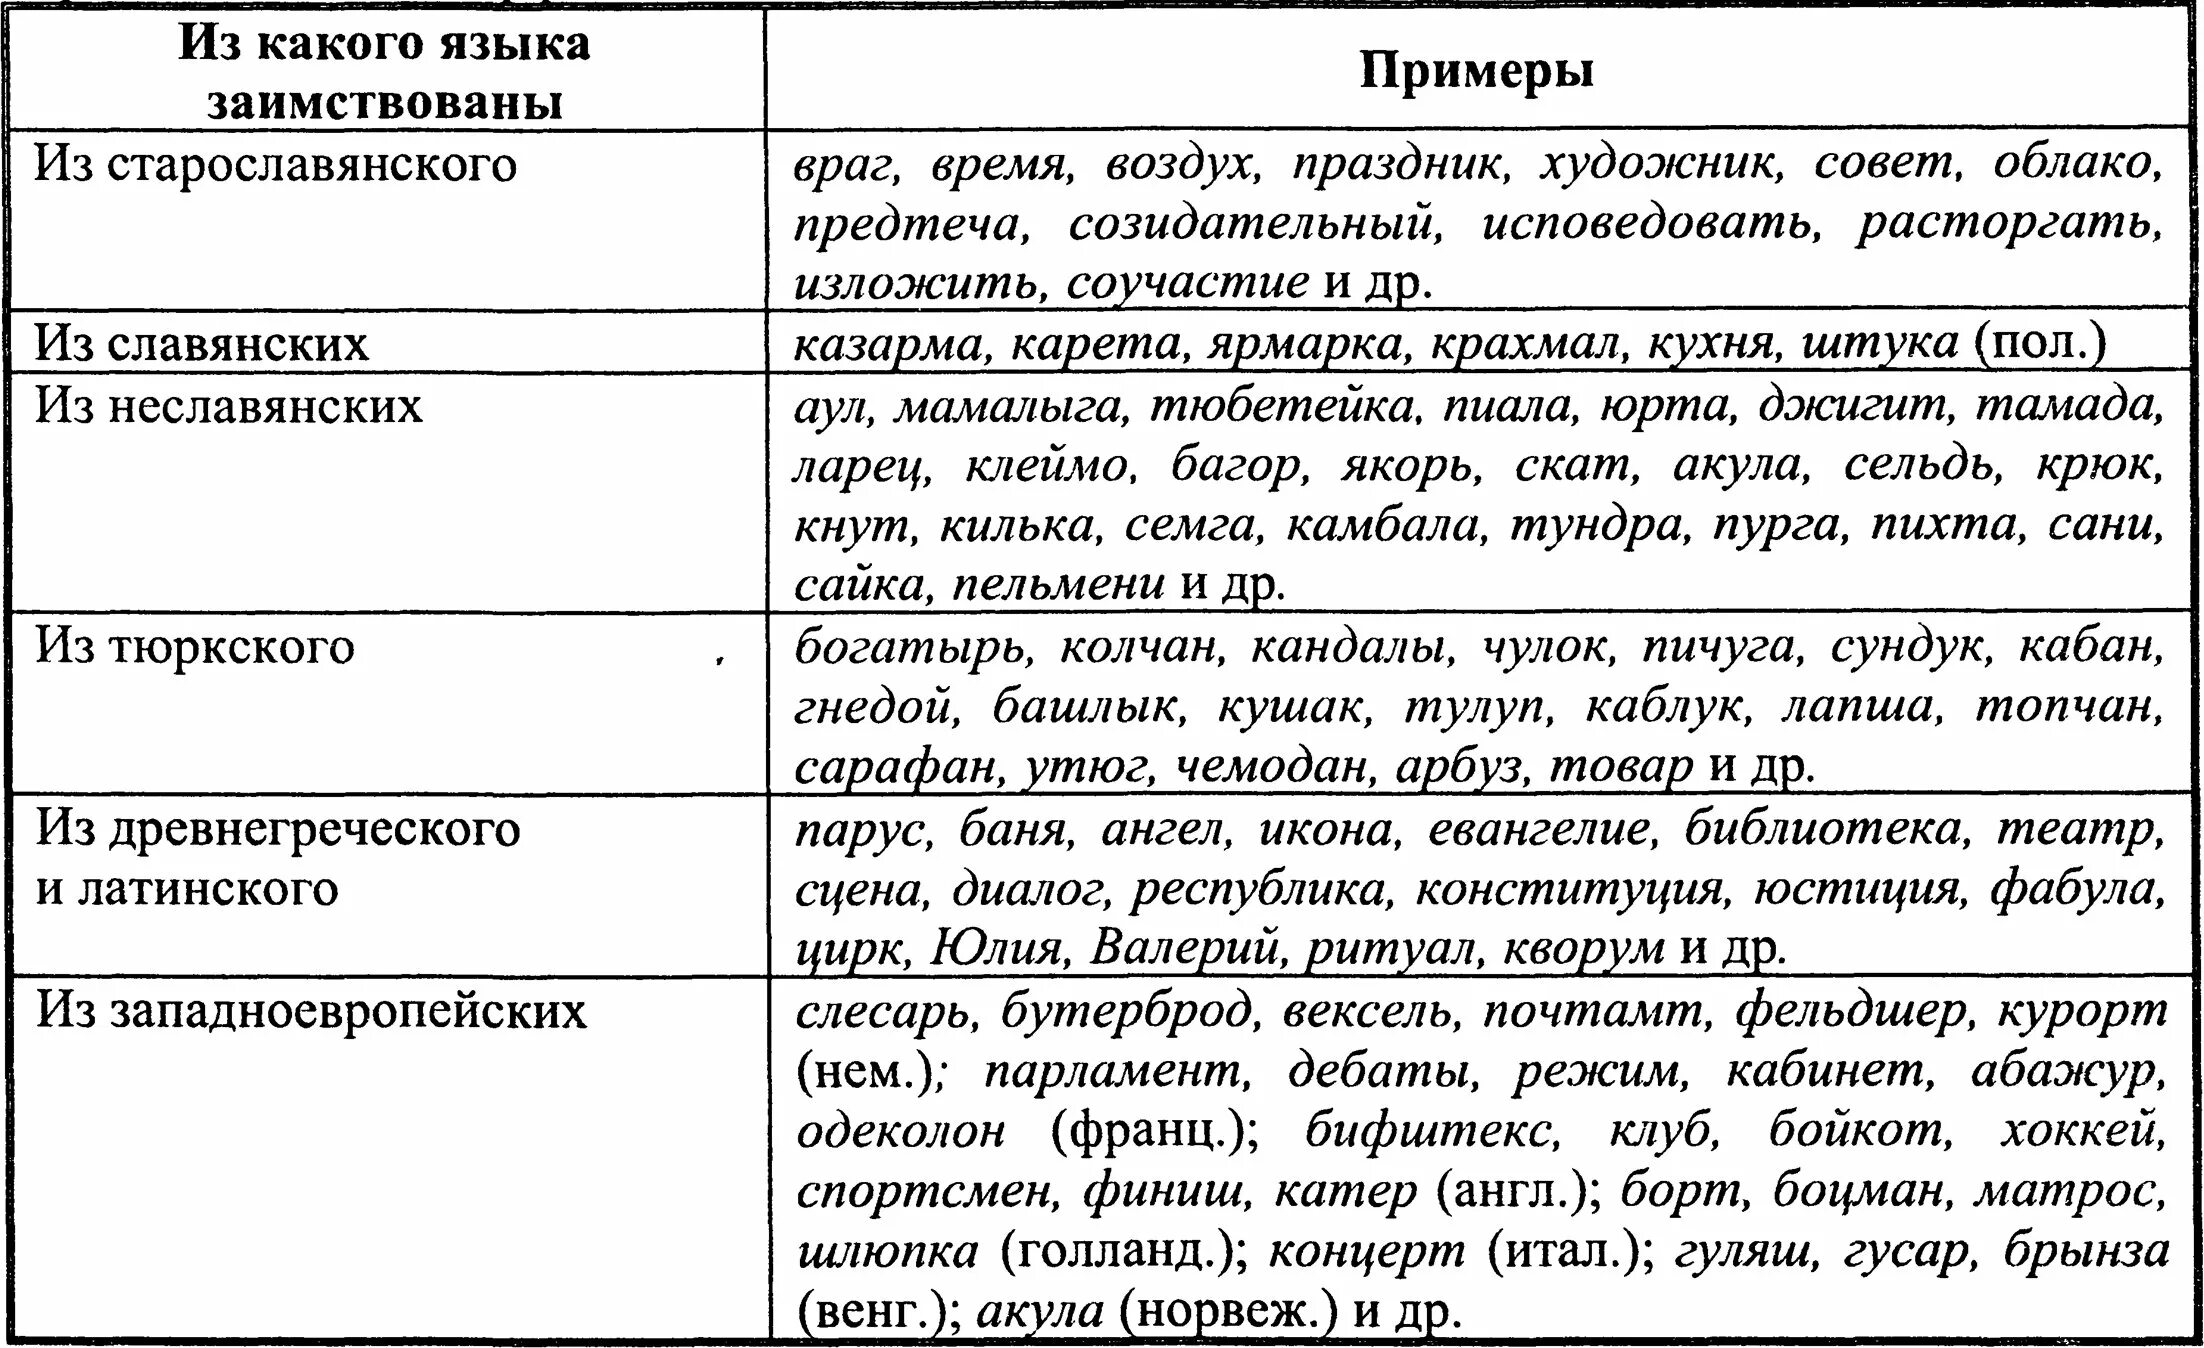 Современные новые термины. Заимствованные слова таблица. Заимствованные слова в русском языке. Признаки заимствованных слов в русском языке таблица. Заимствованная лексика таблица.